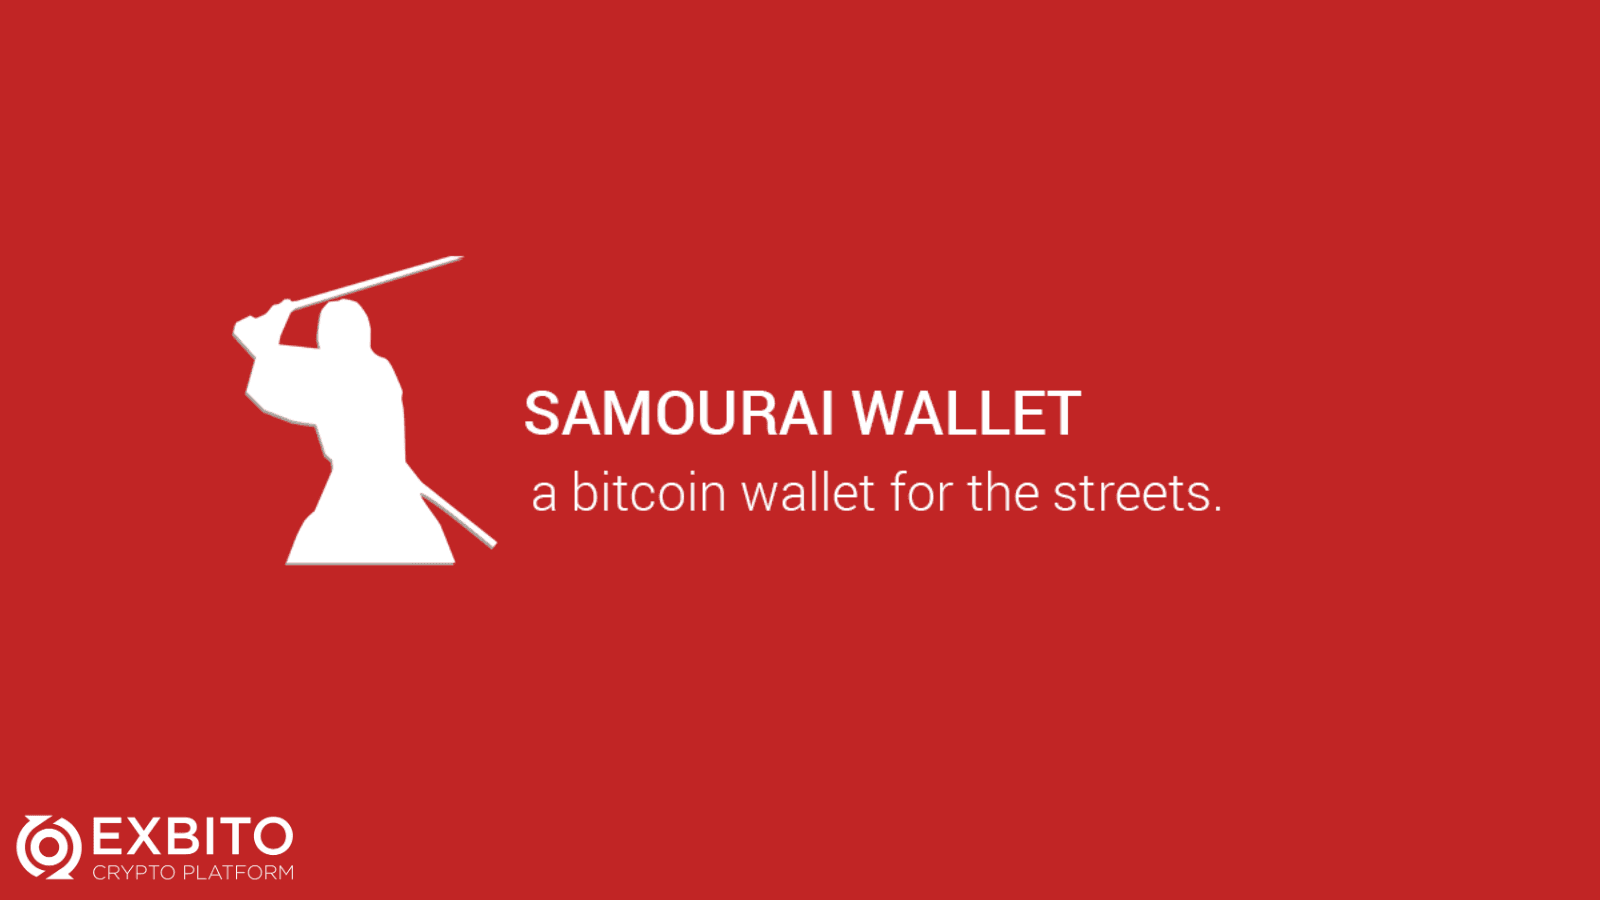 کیف پول سامورایی (samurai) چیست؟